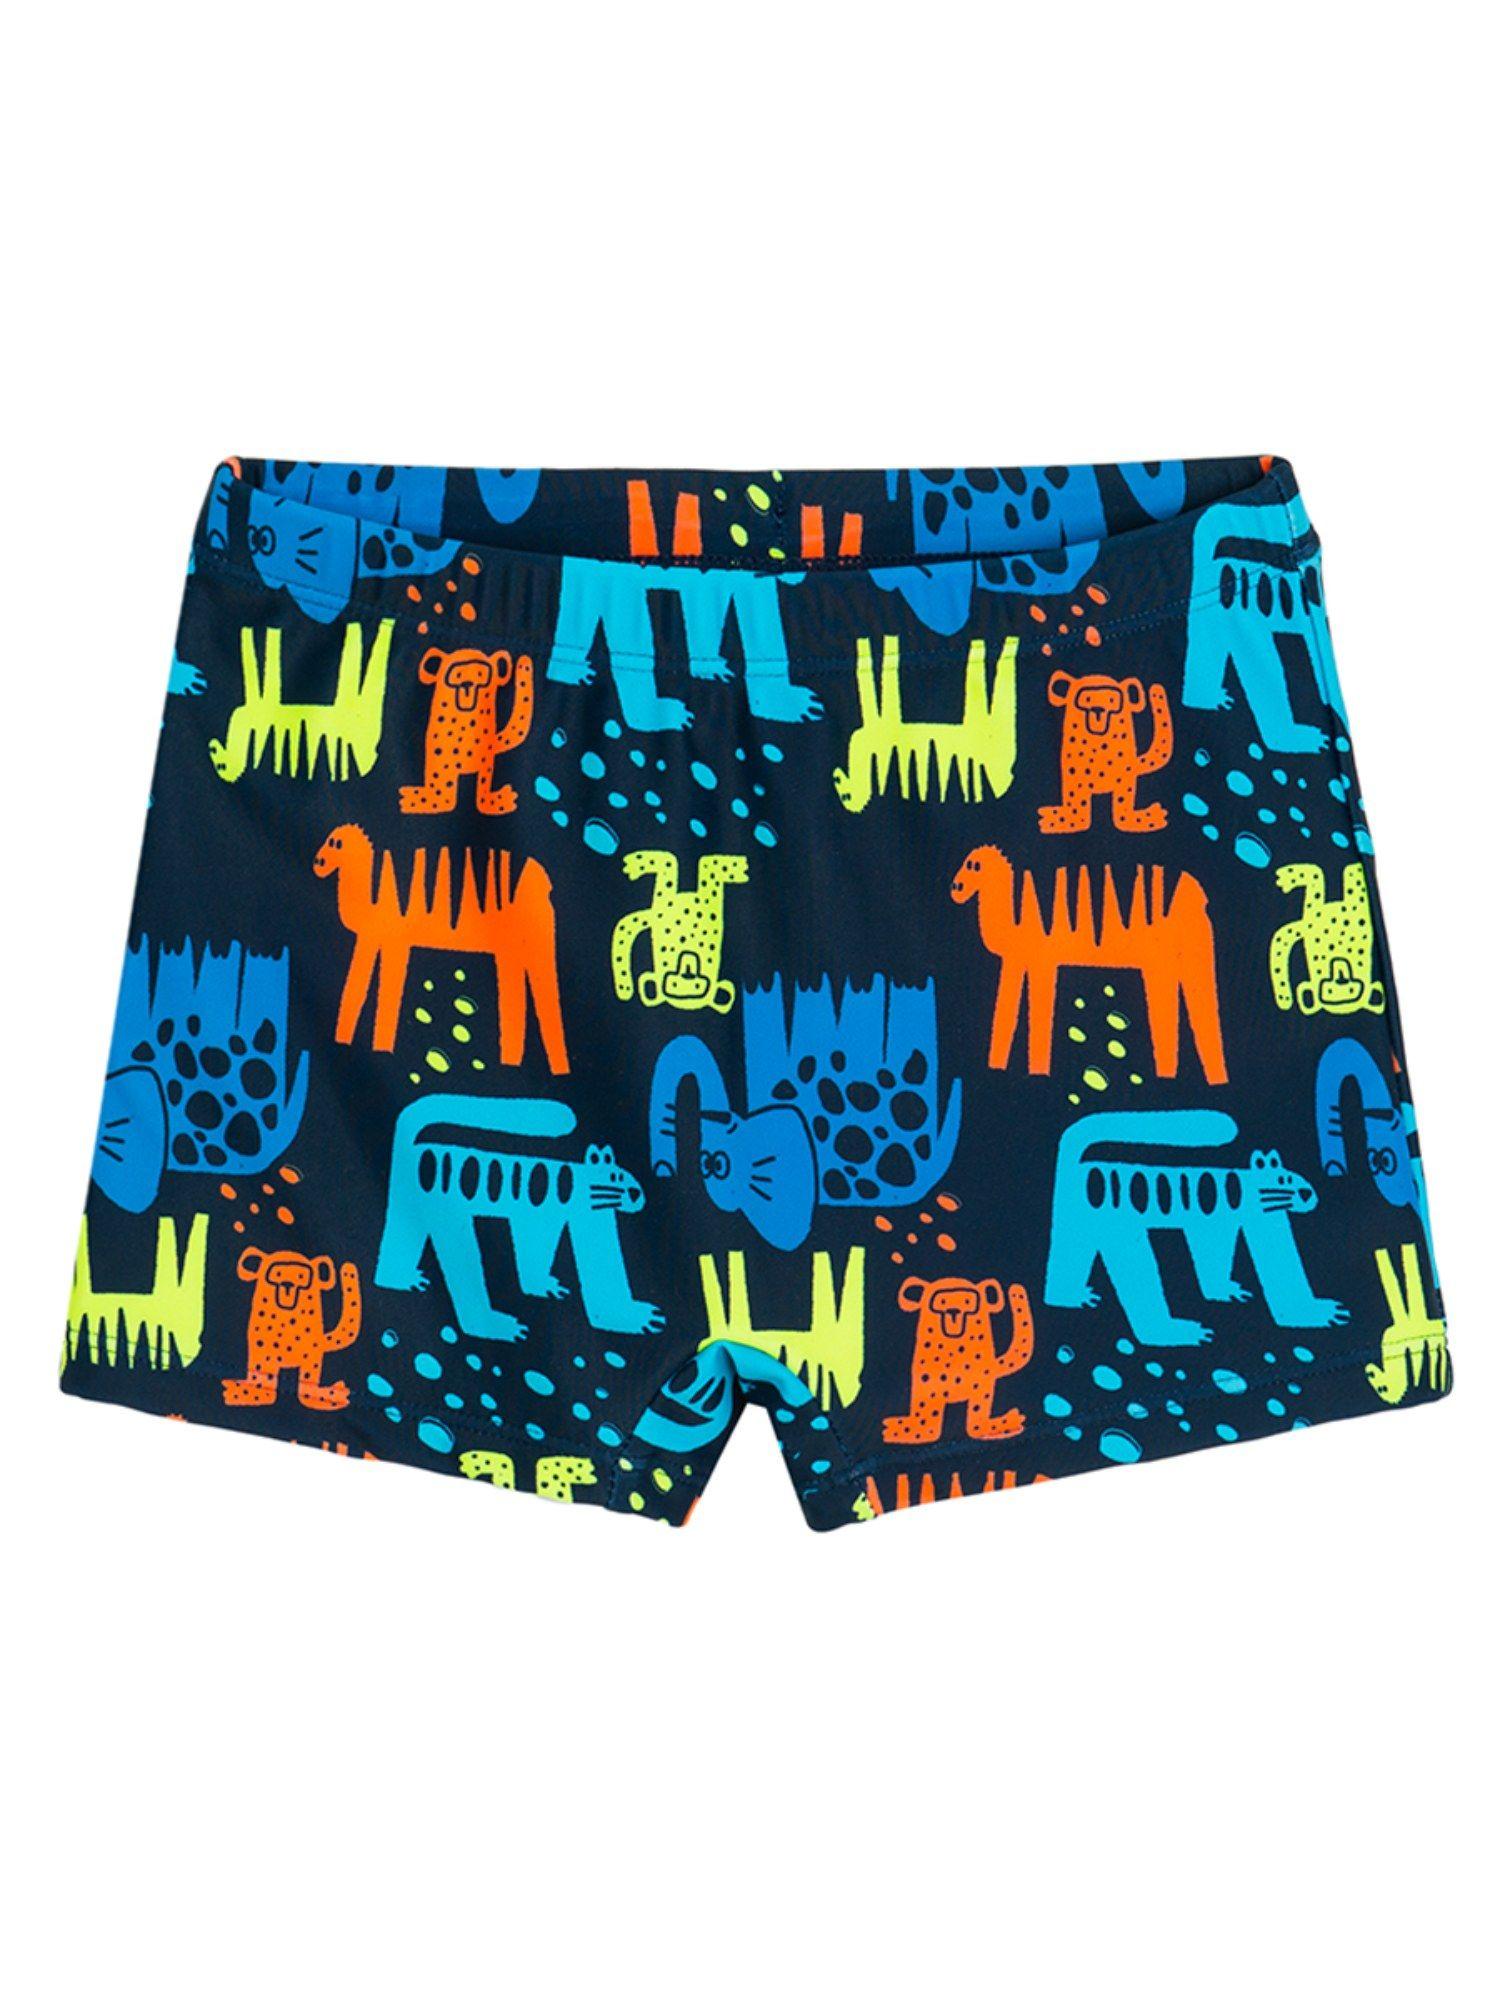 smyk boys navy blue printed swimwear shorts